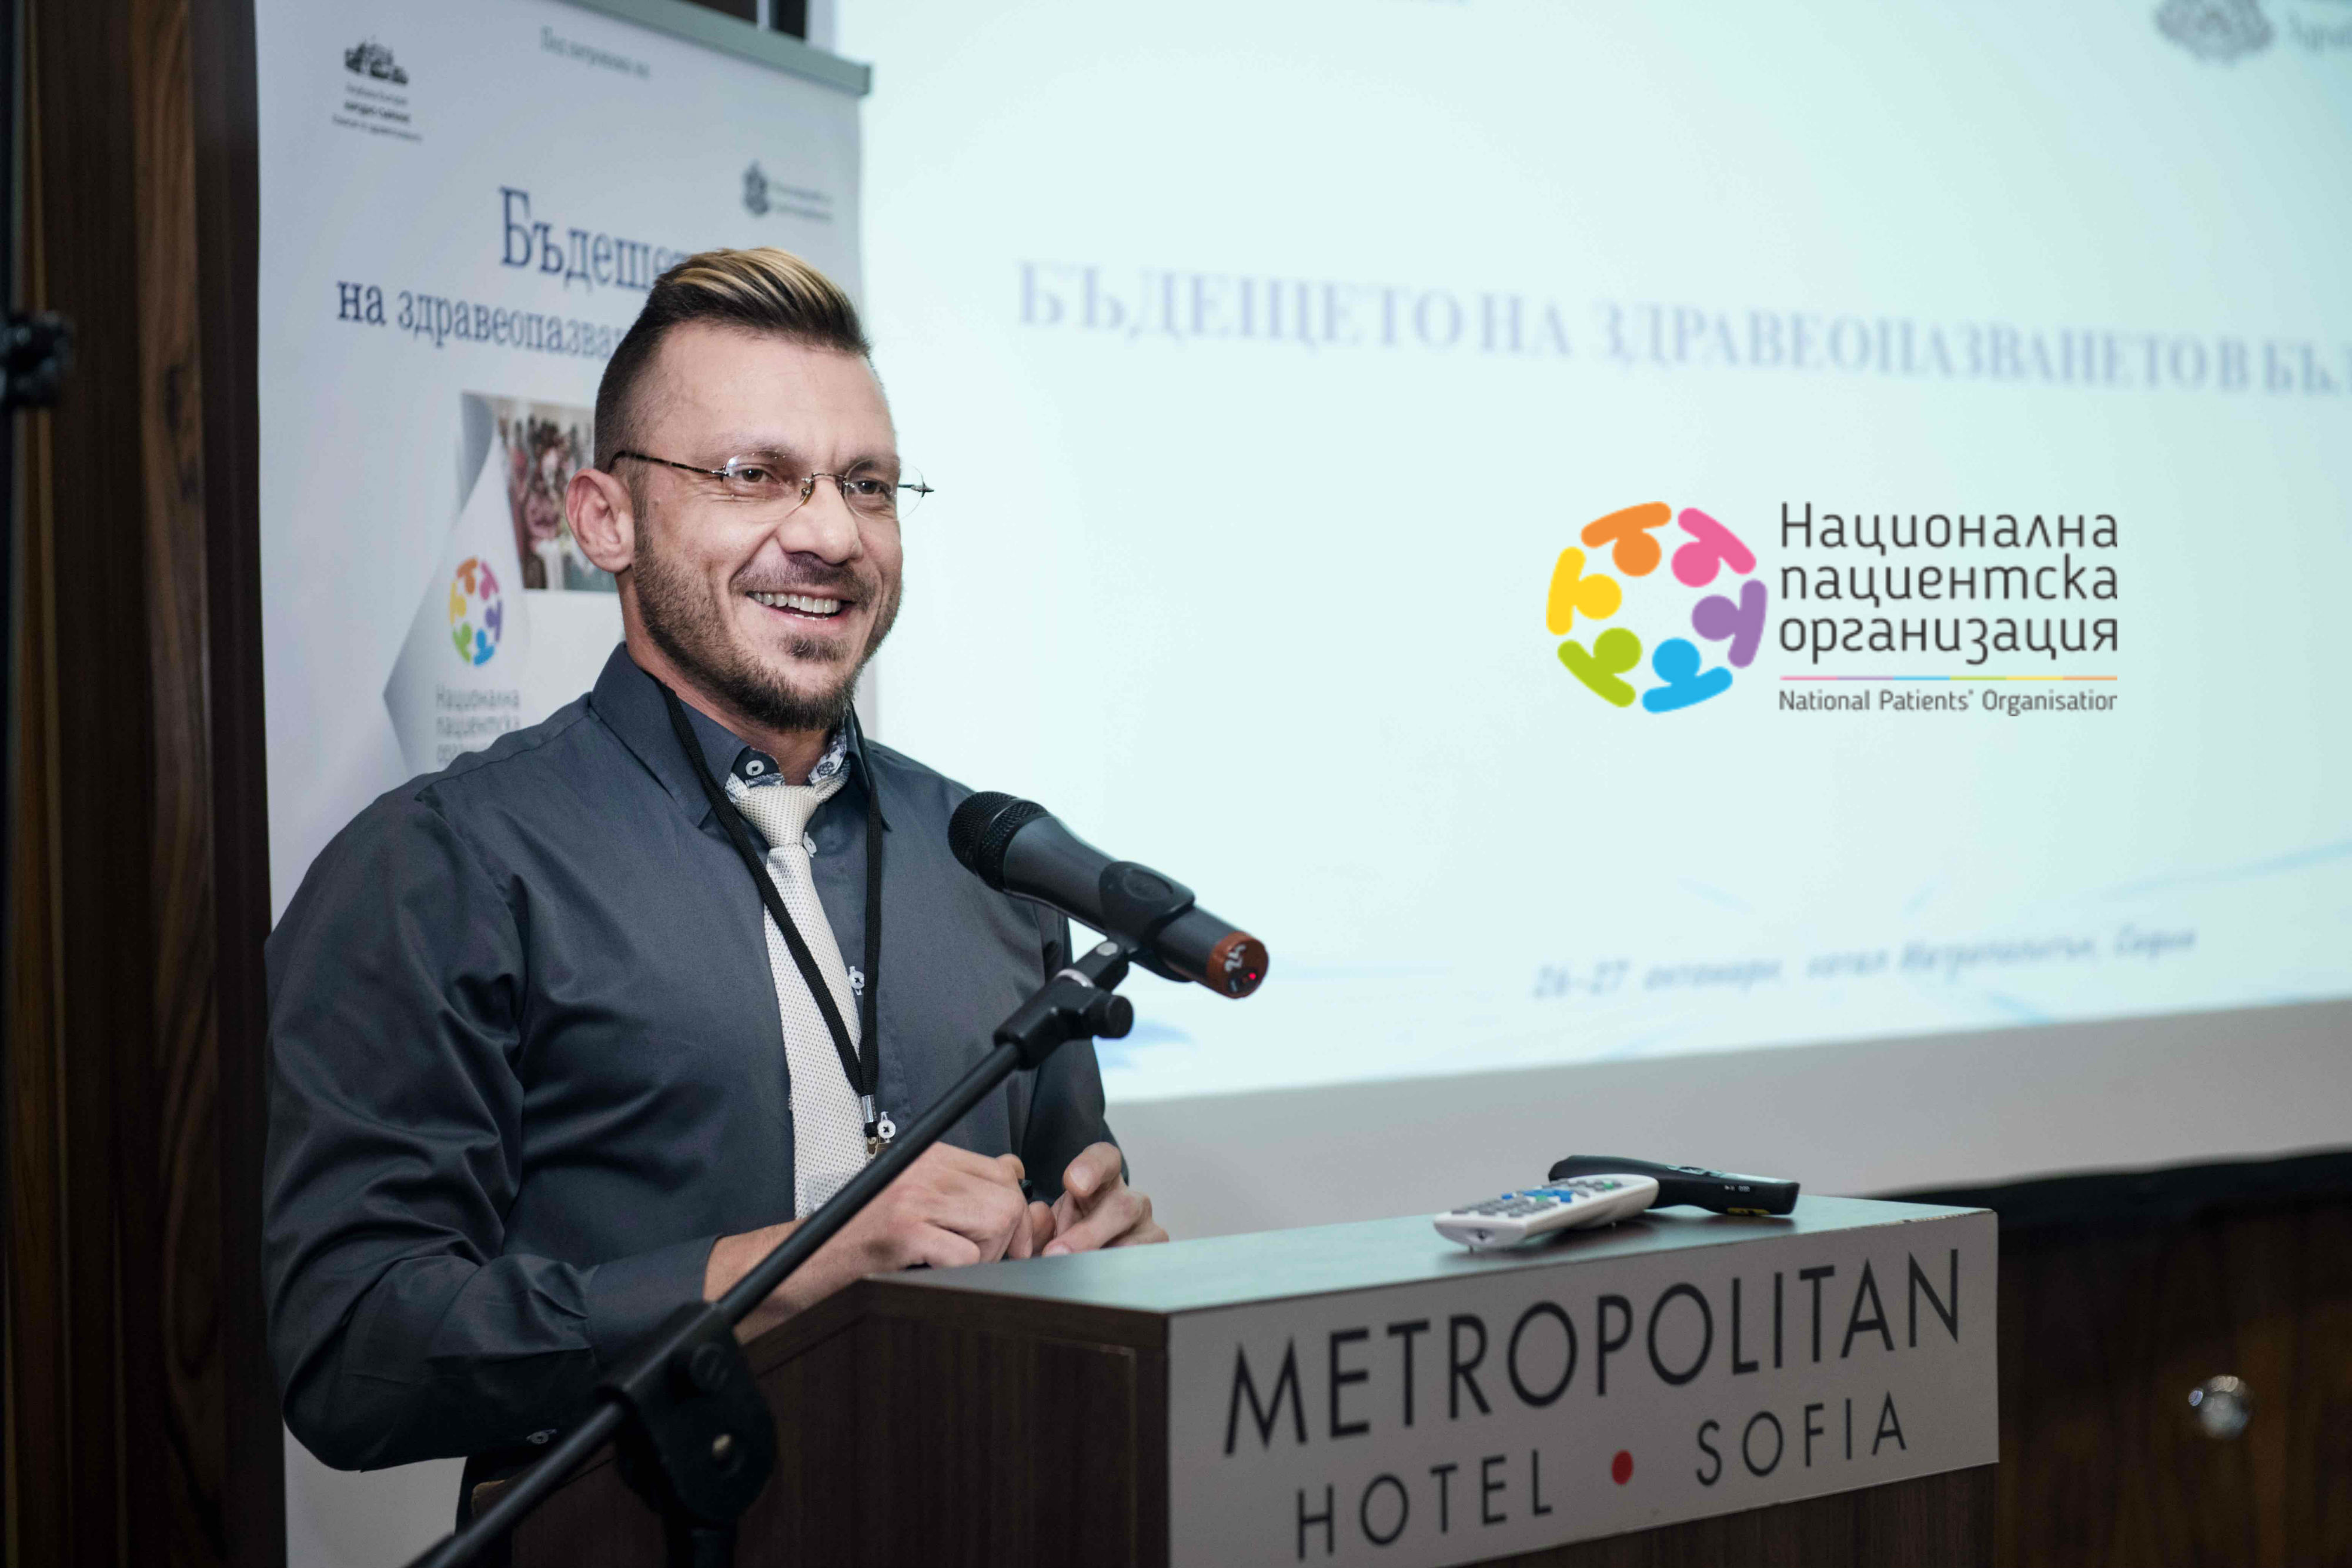 Д-р Станимир Хасърджиев: Инвестицията в хората с увреждания и хронични заболявания се връща, когато фокусът не е върху дефицитите